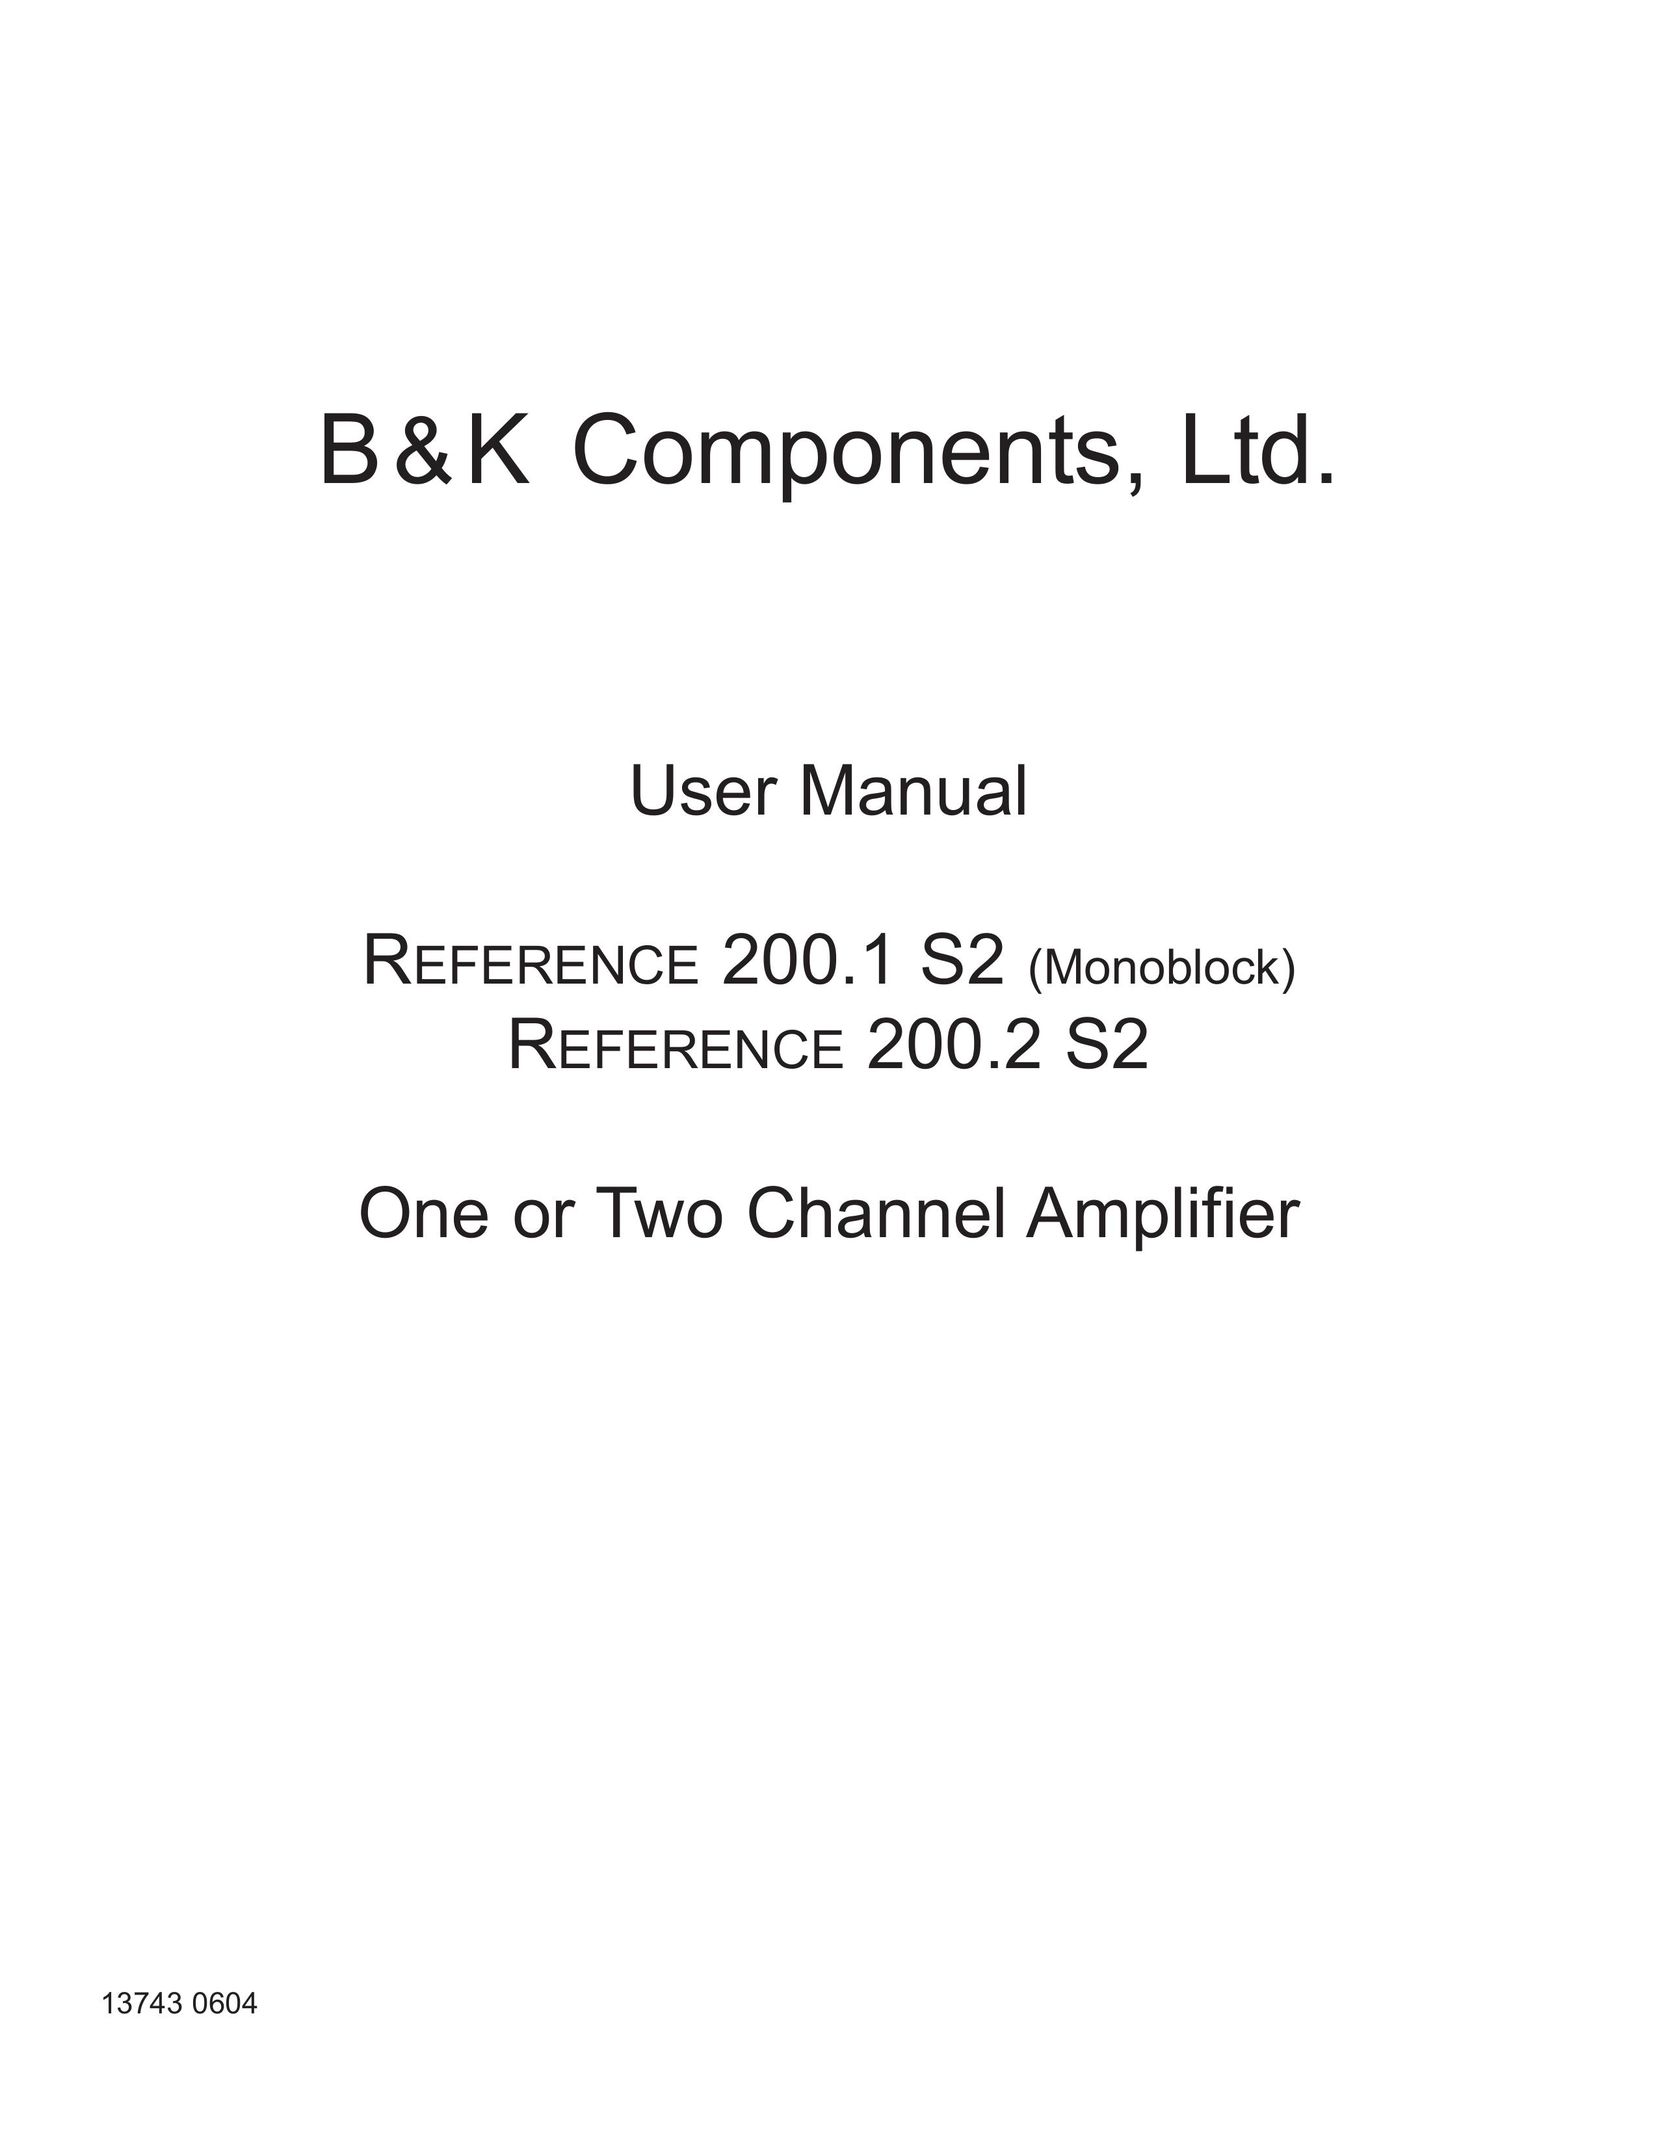 B&K 200.2 S2 Stereo Amplifier User Manual